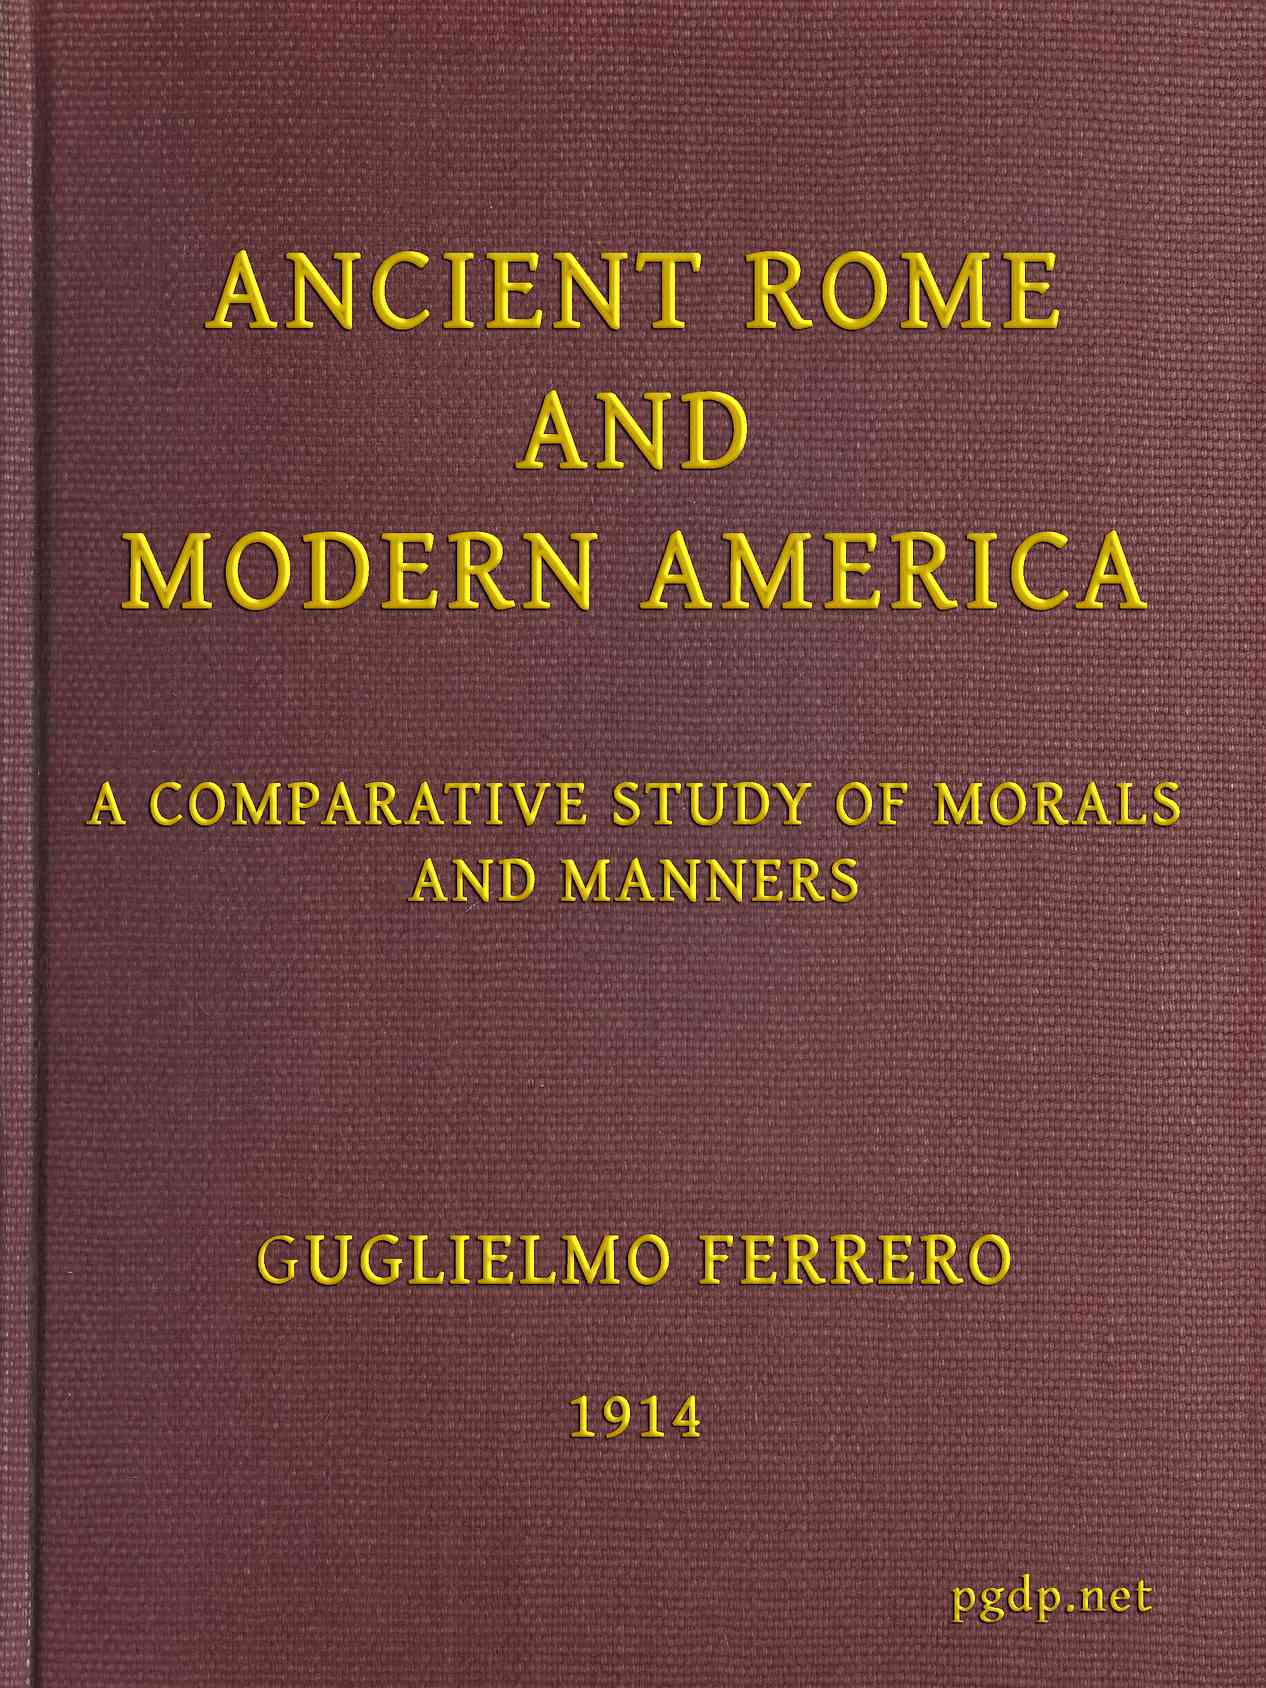 Antik Roma ve Modern Amerika; Ahlak ve Adetlerin Karşılaştırmalı İncelenmesi